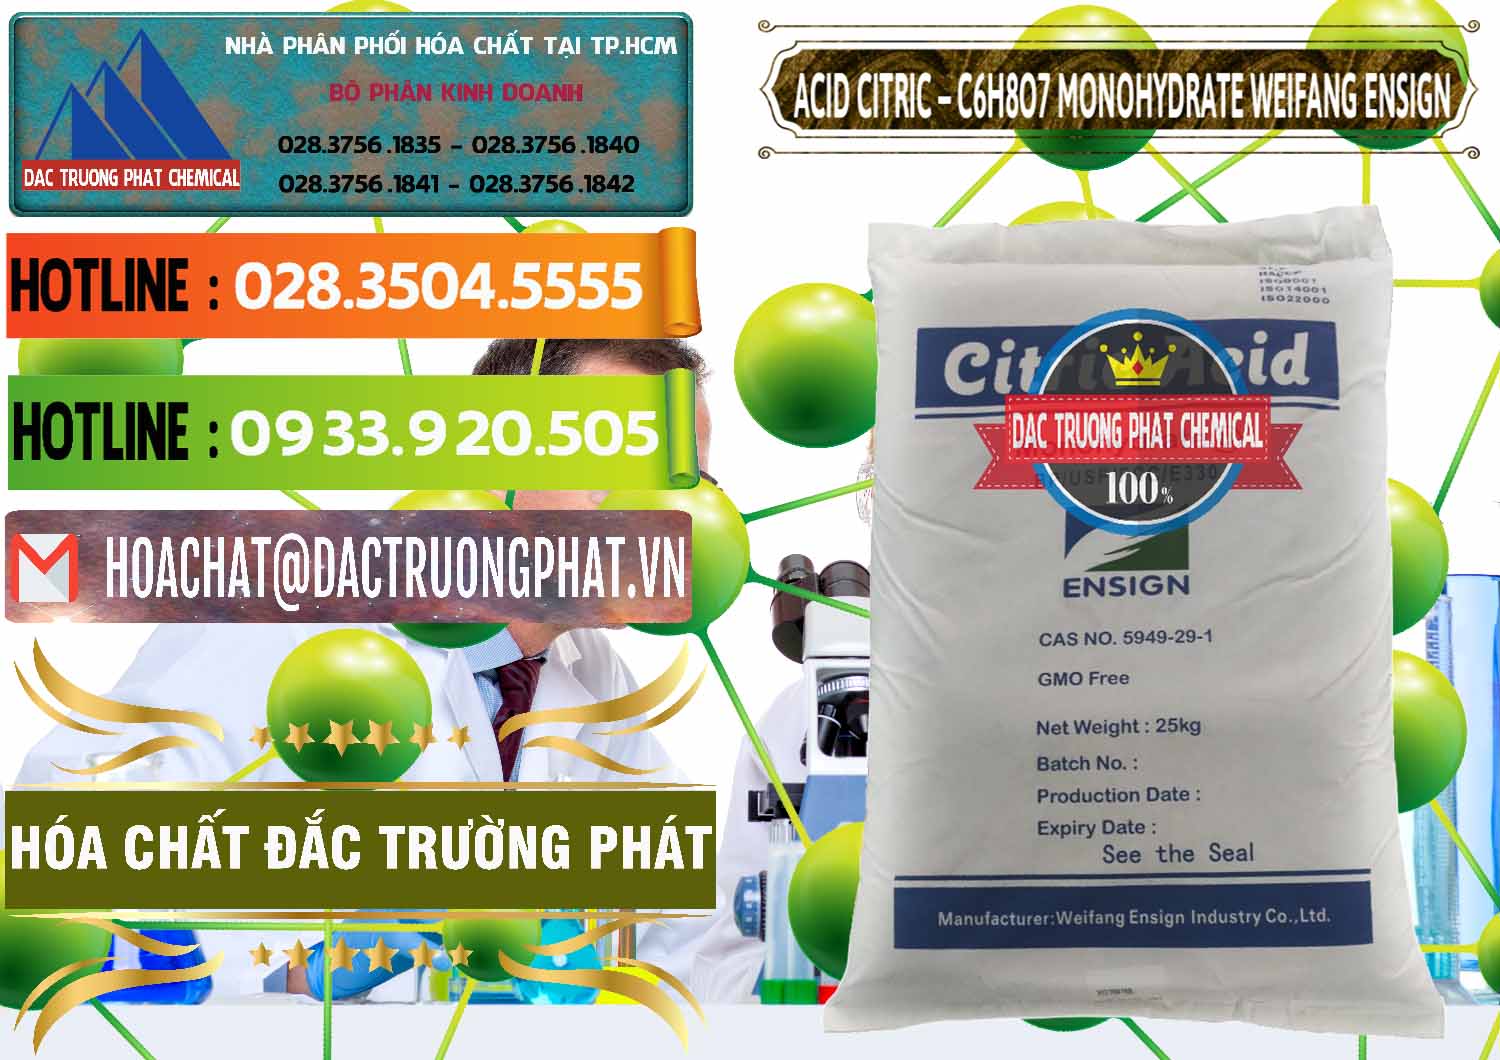 Nhà nhập khẩu - bán Acid Citric - Axit Citric Monohydrate Weifang Trung Quốc China - 0009 - Chuyên phân phối _ cung cấp hóa chất tại TP.HCM - cungcaphoachat.com.vn